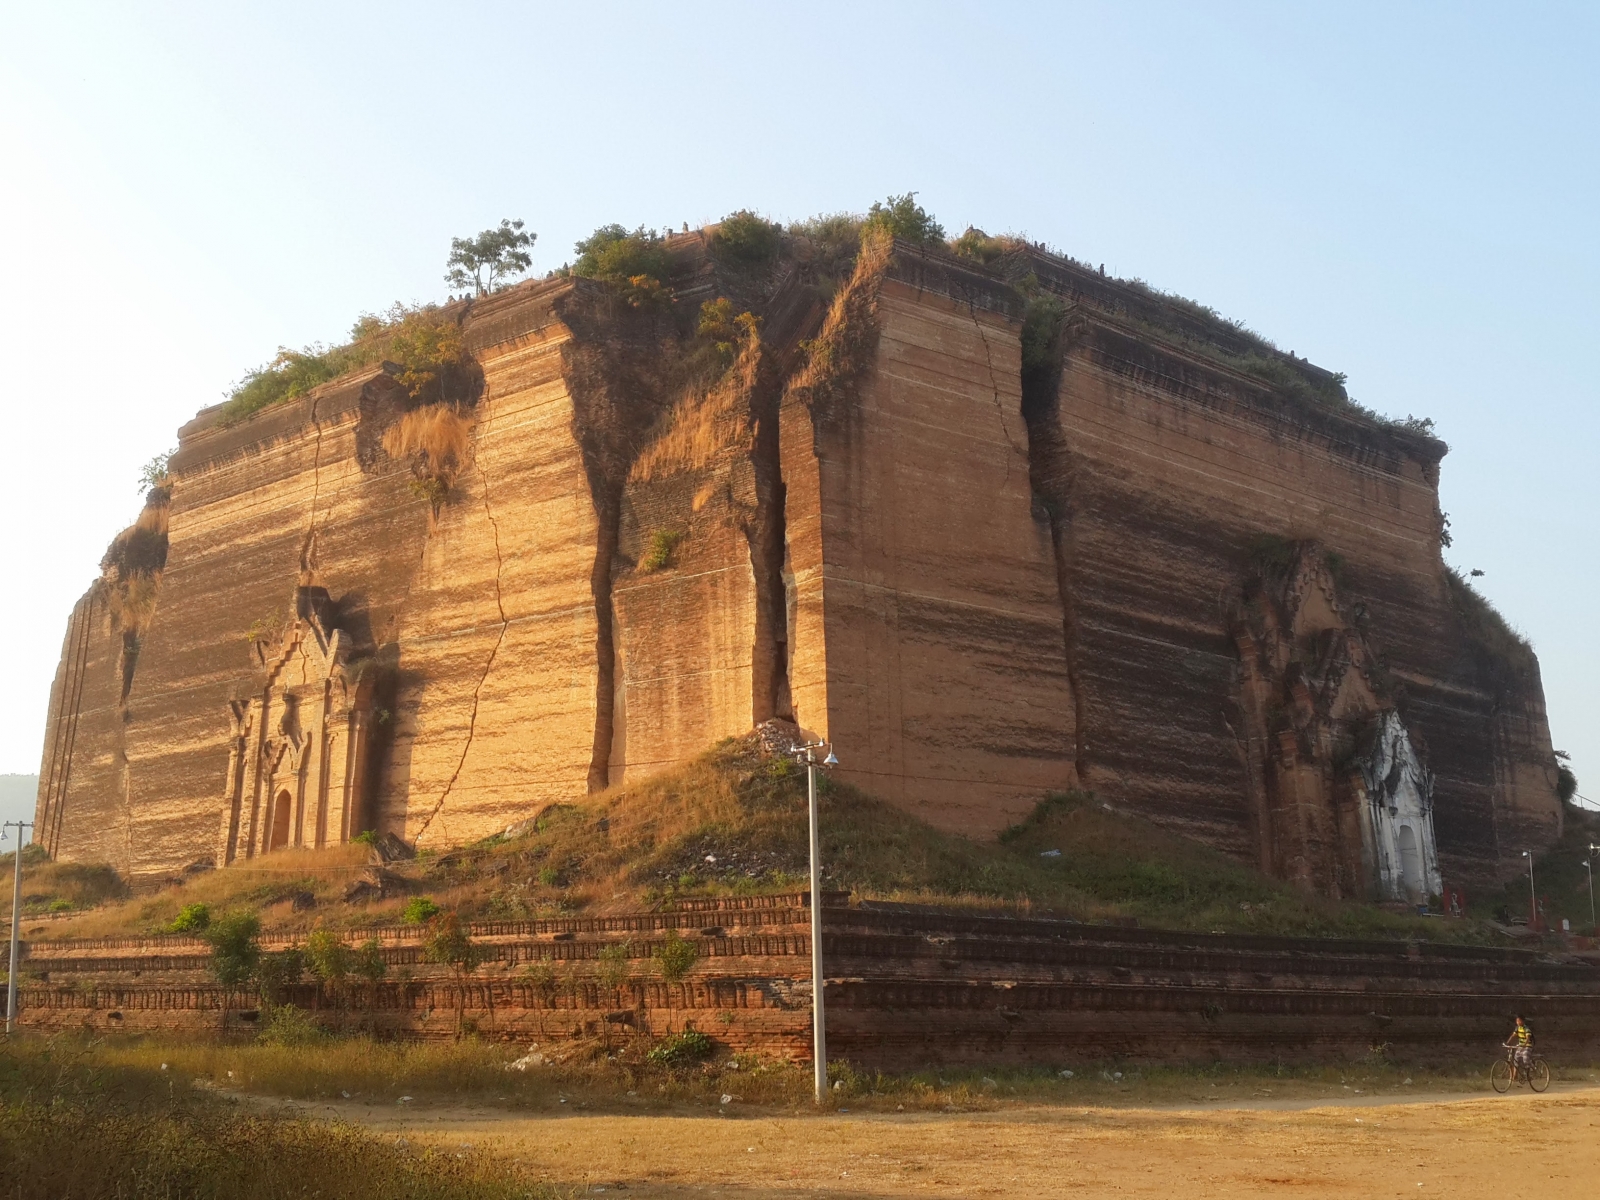 Mingun Pahtodawgyi stupa in Birmania